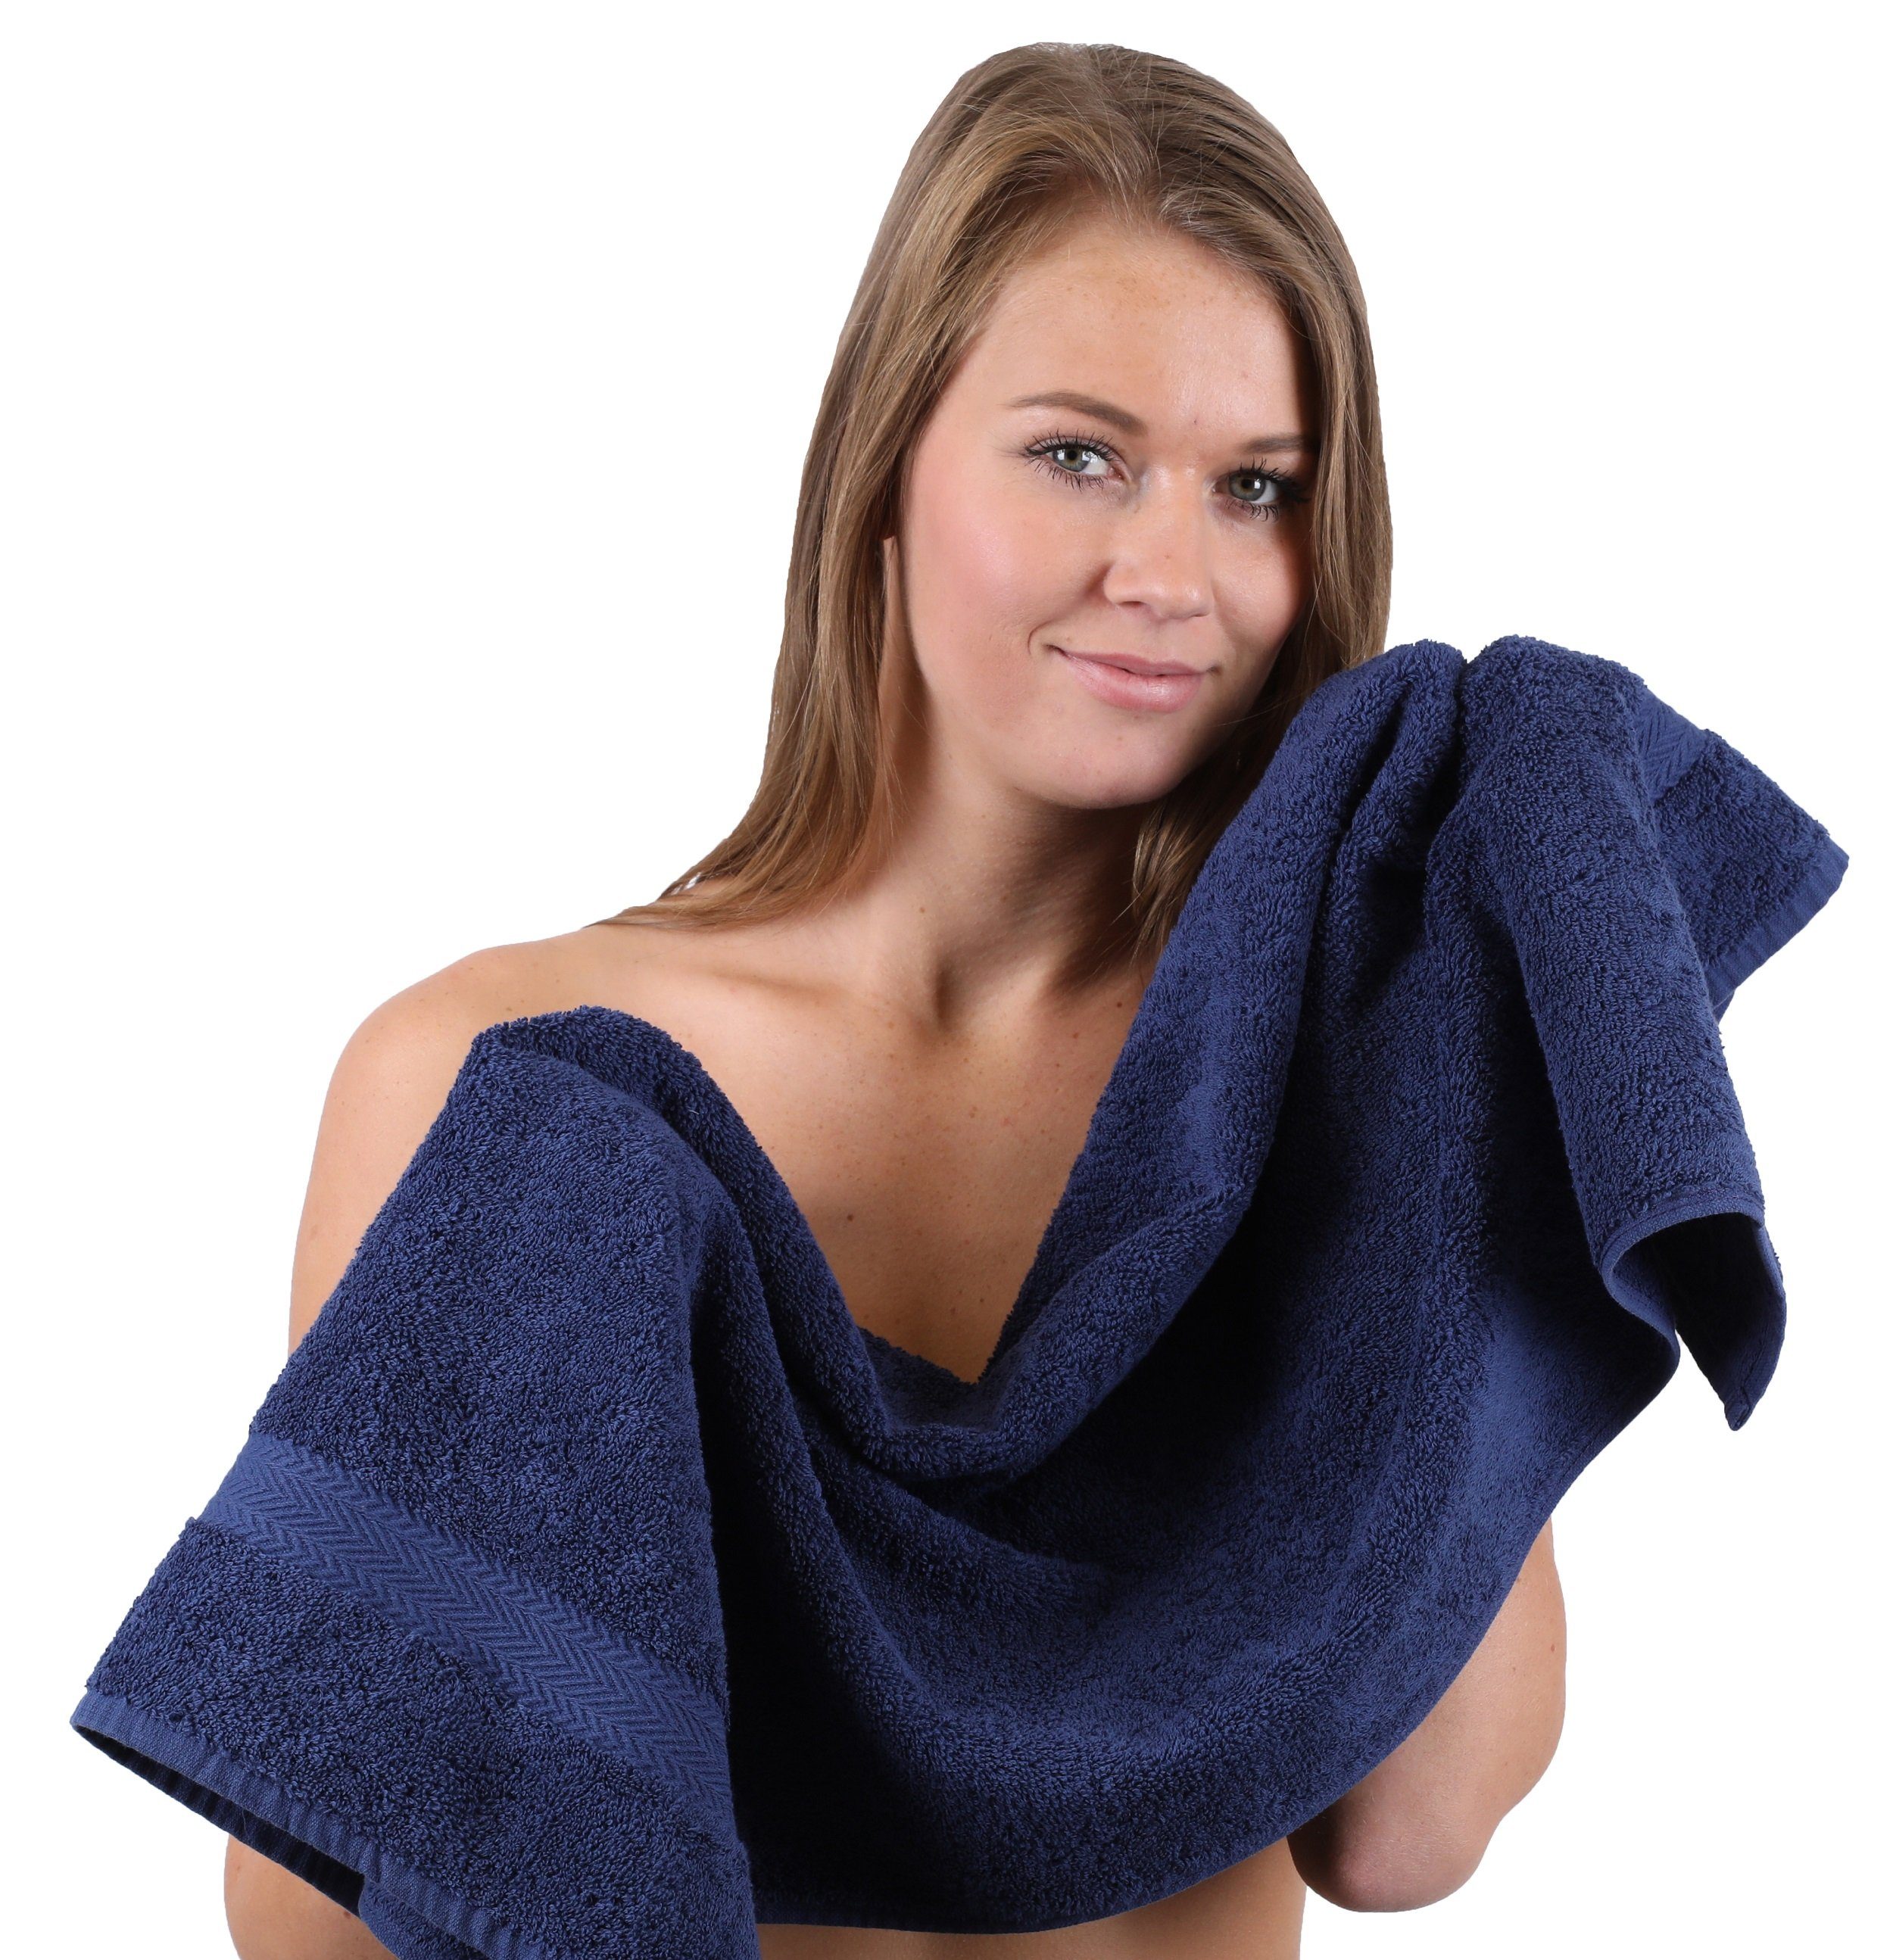 Set Baumwolle Betz Handtuch-Set Classic 100% und dunkelblau 10-TLG. Farbe anthrazitgrau, Handtuch